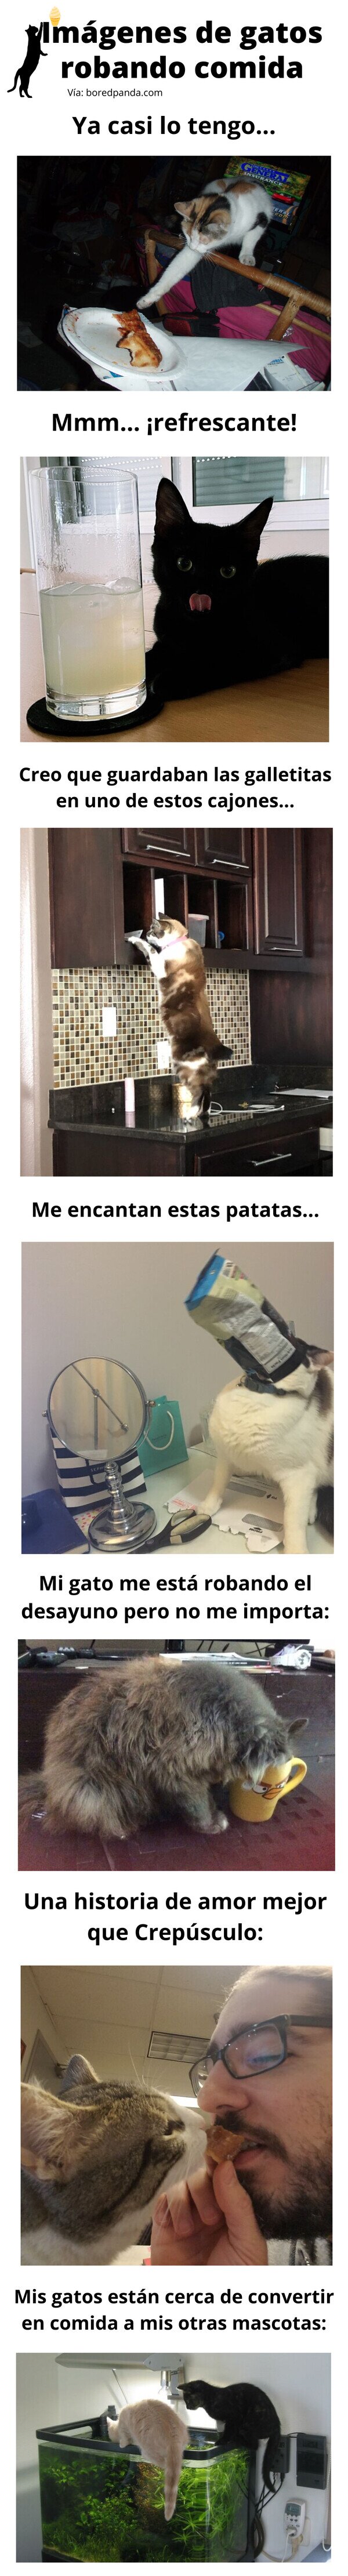 Meme_otros - Imágenes de gatos robando comida